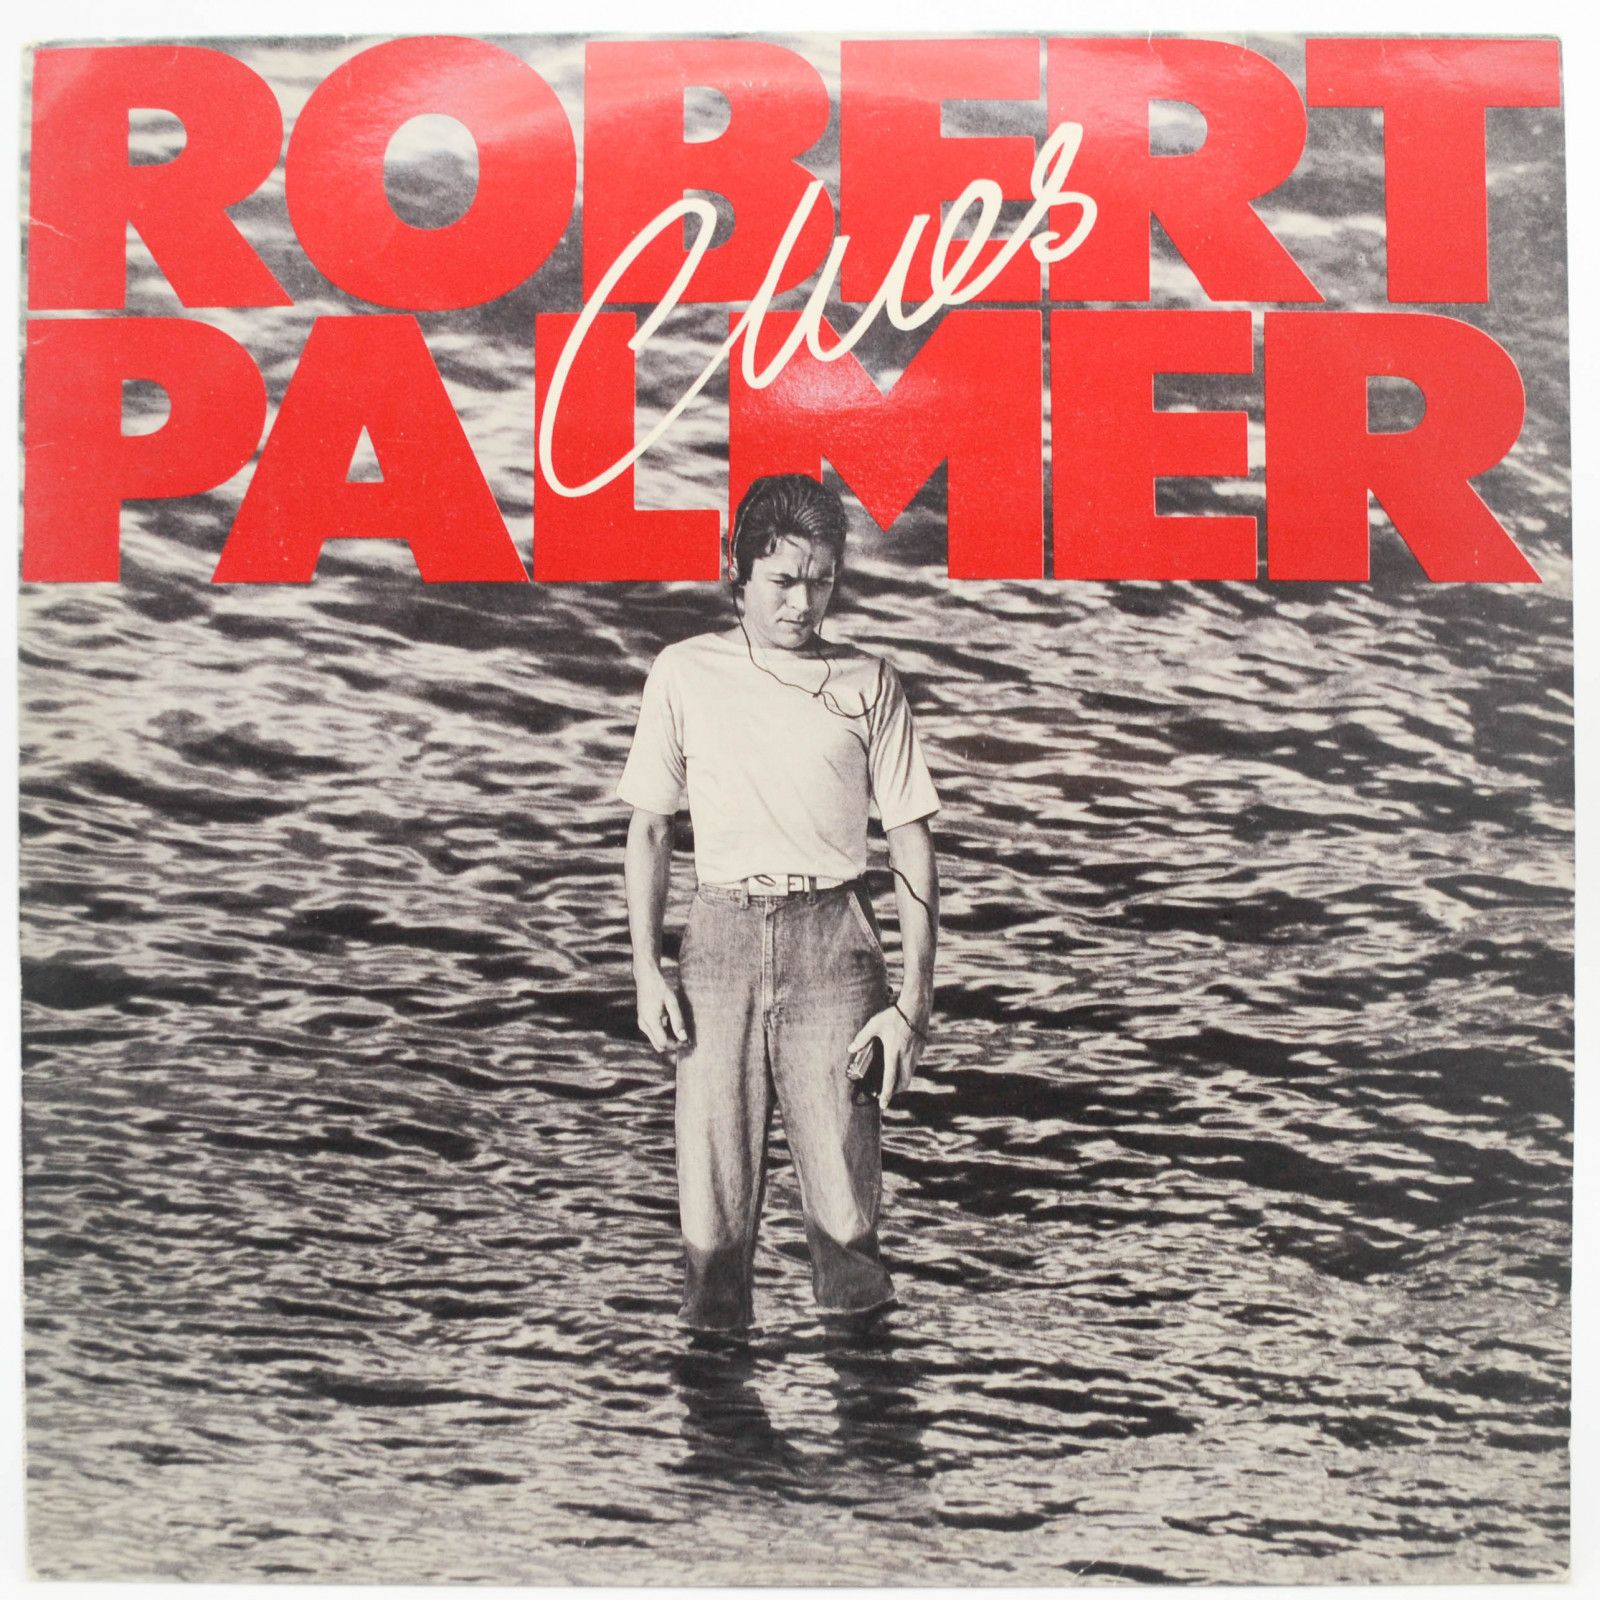 Robert Palmer — Clues, 1980